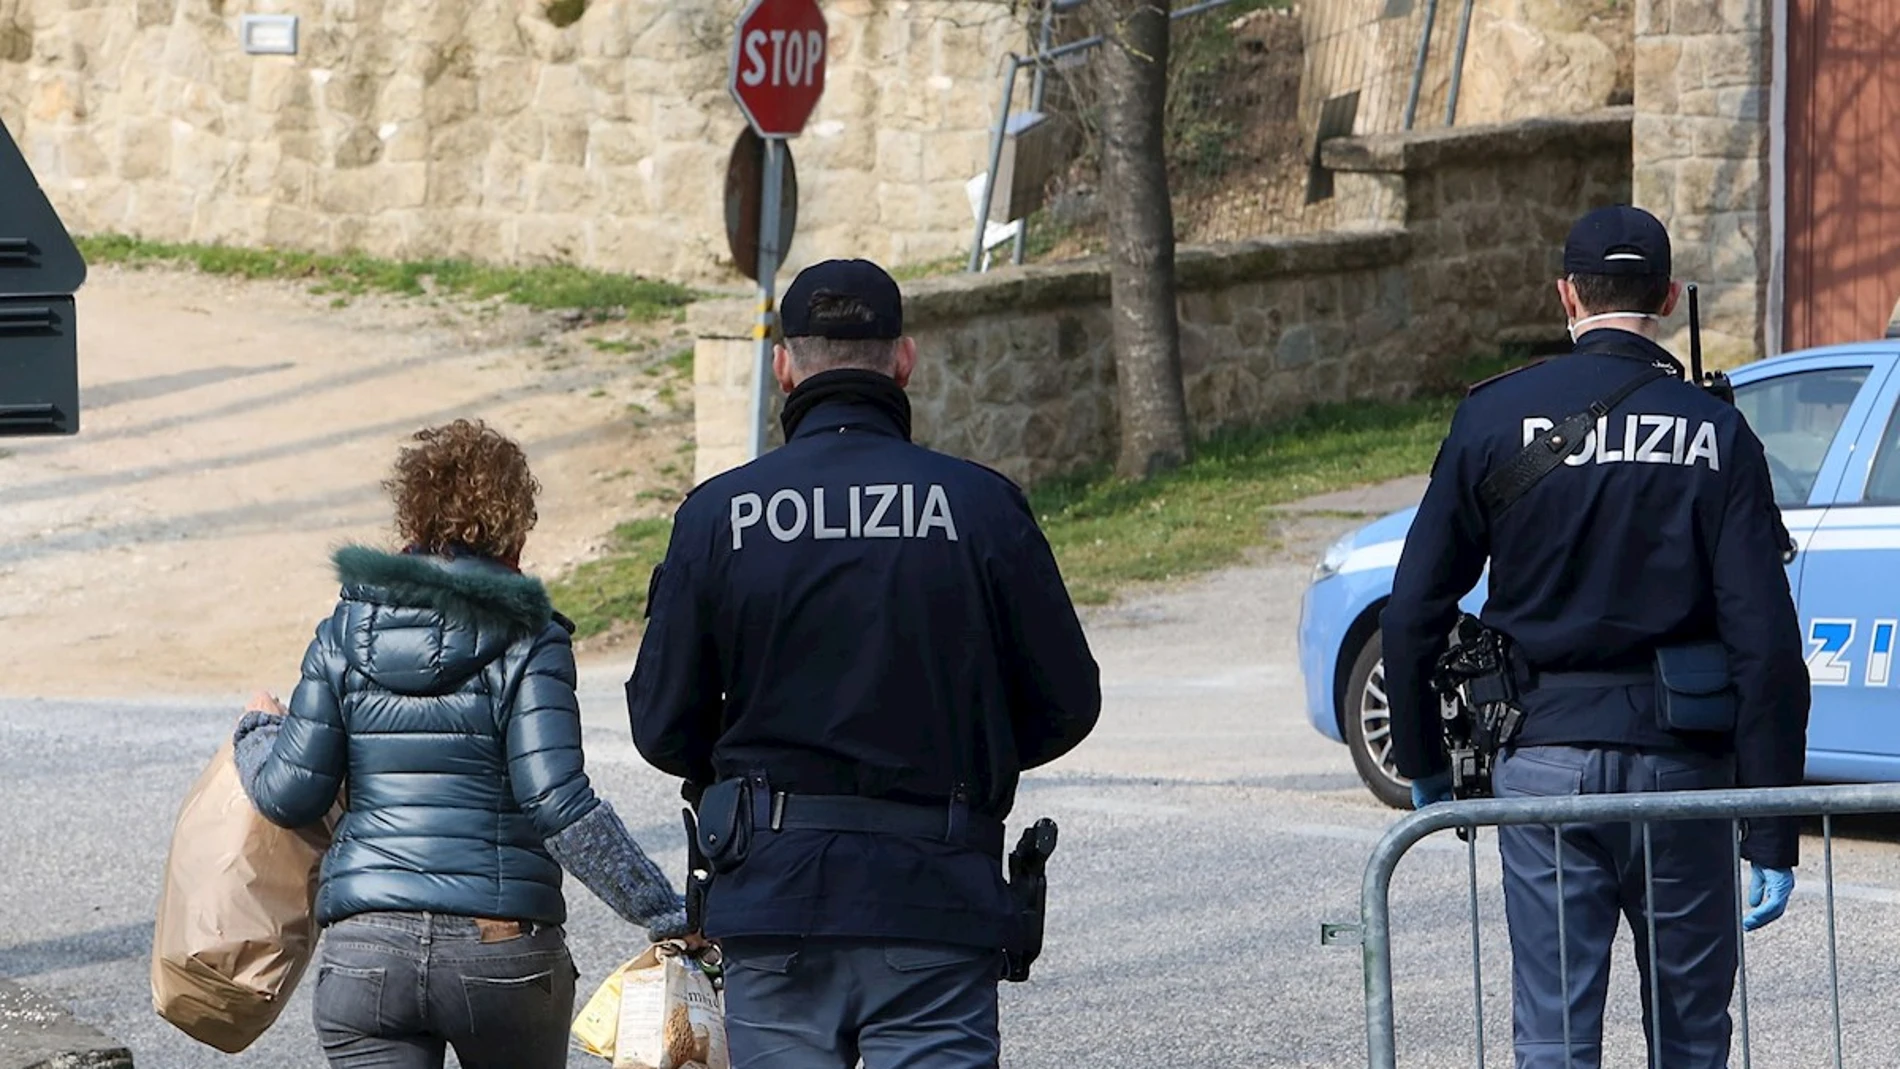 La Policía italiana en Milán, tras la llegada del coronavirus